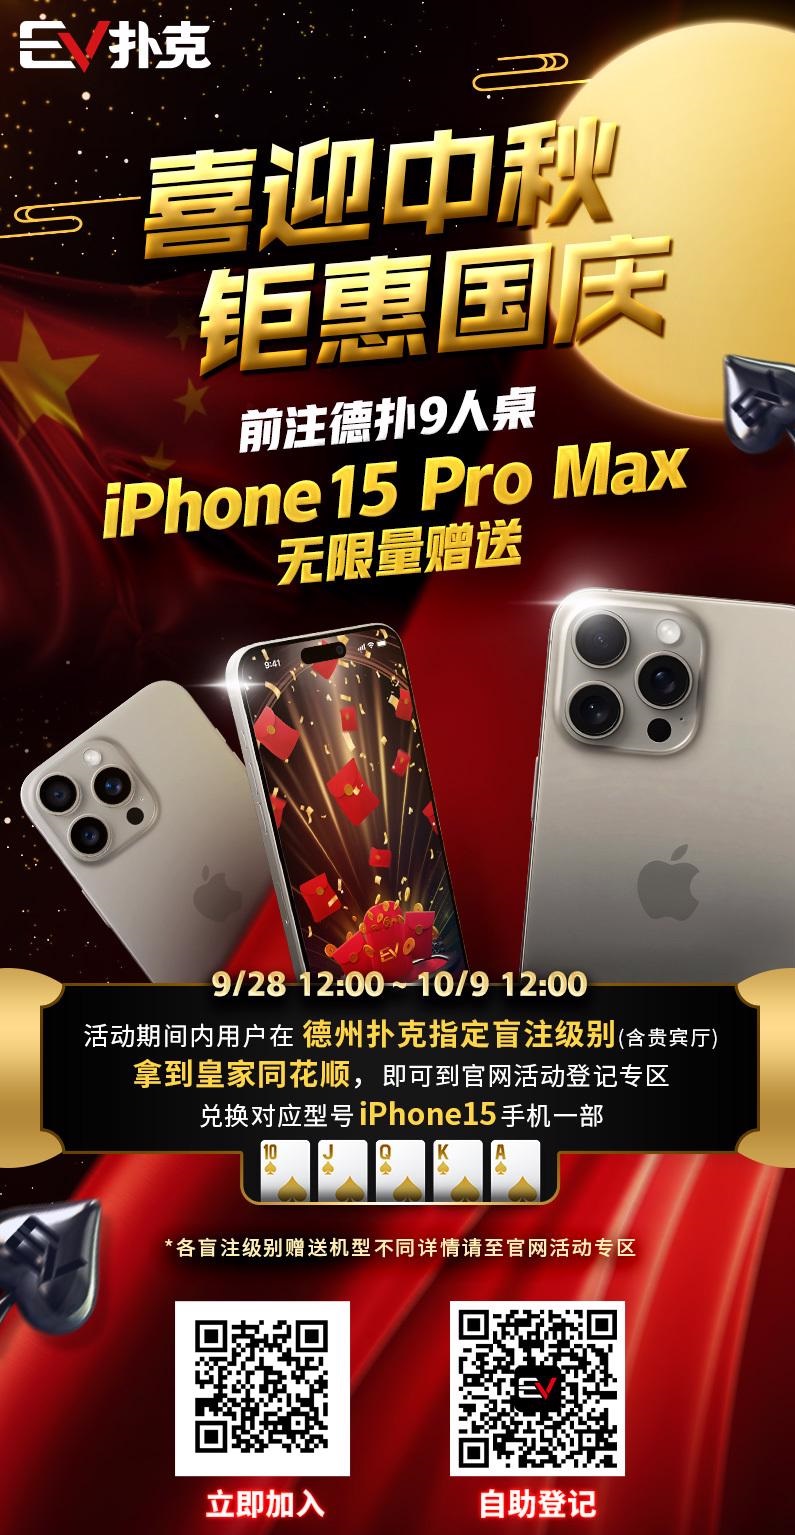 【EPCP扑克】iPhone15 Pro Max&#8221;无限量赠送&#8221;！最实用v.s最荣耀～盘点那些特别的冠军奖励